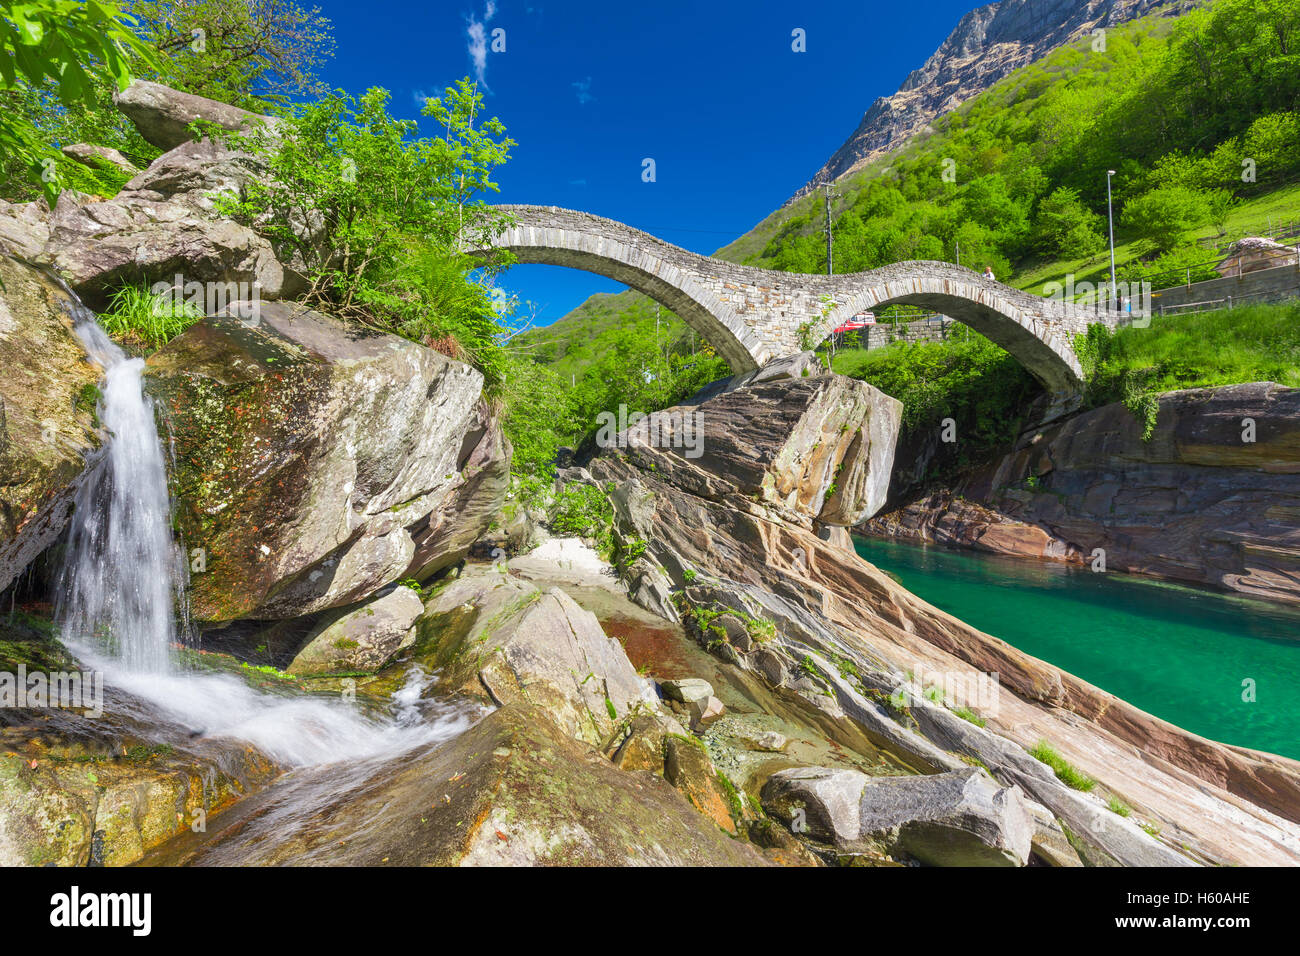 Pont de pierre, à l'arcade Double Ponte dei Salti avec cascade, Lavertezzo, Verzascatal, Tessin, Suisse Banque D'Images